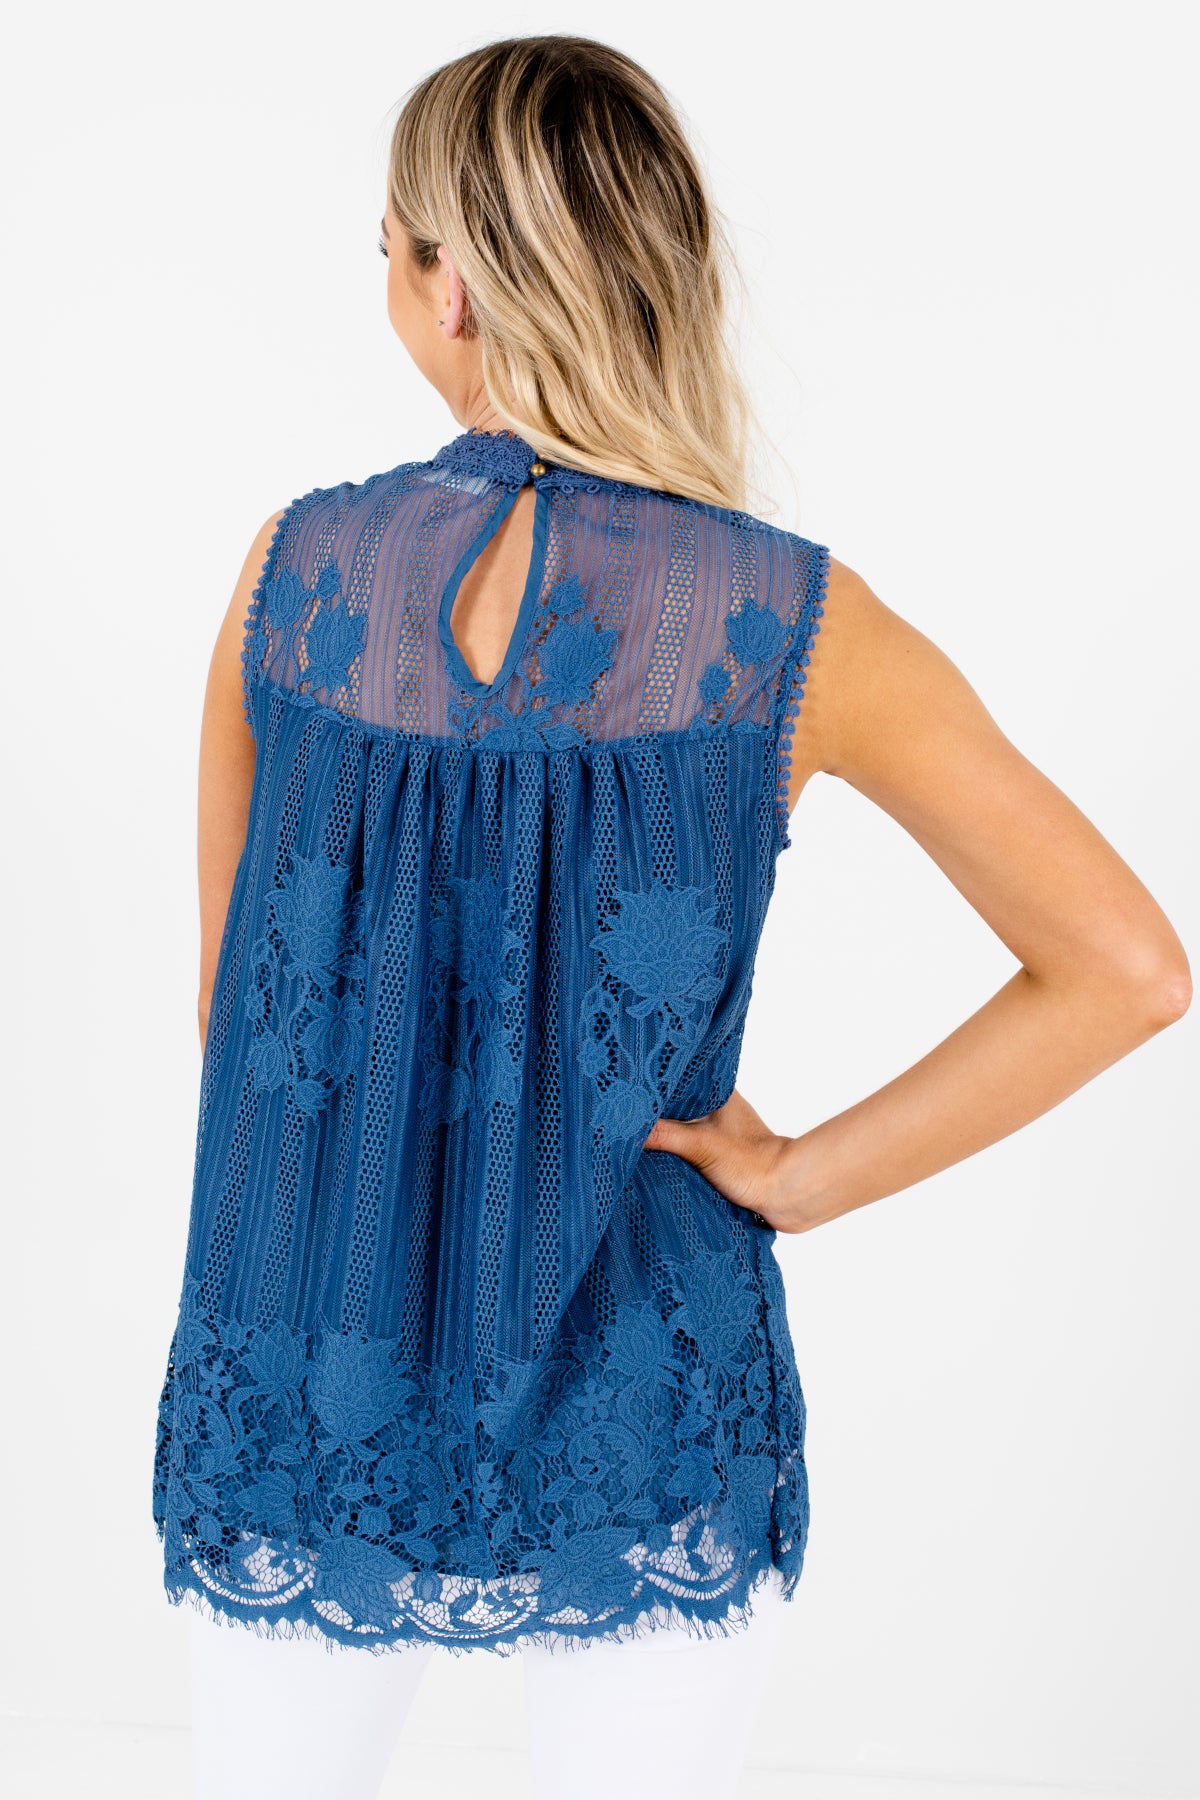 Women's Blue Keyhole Style Boutique Lace Tops